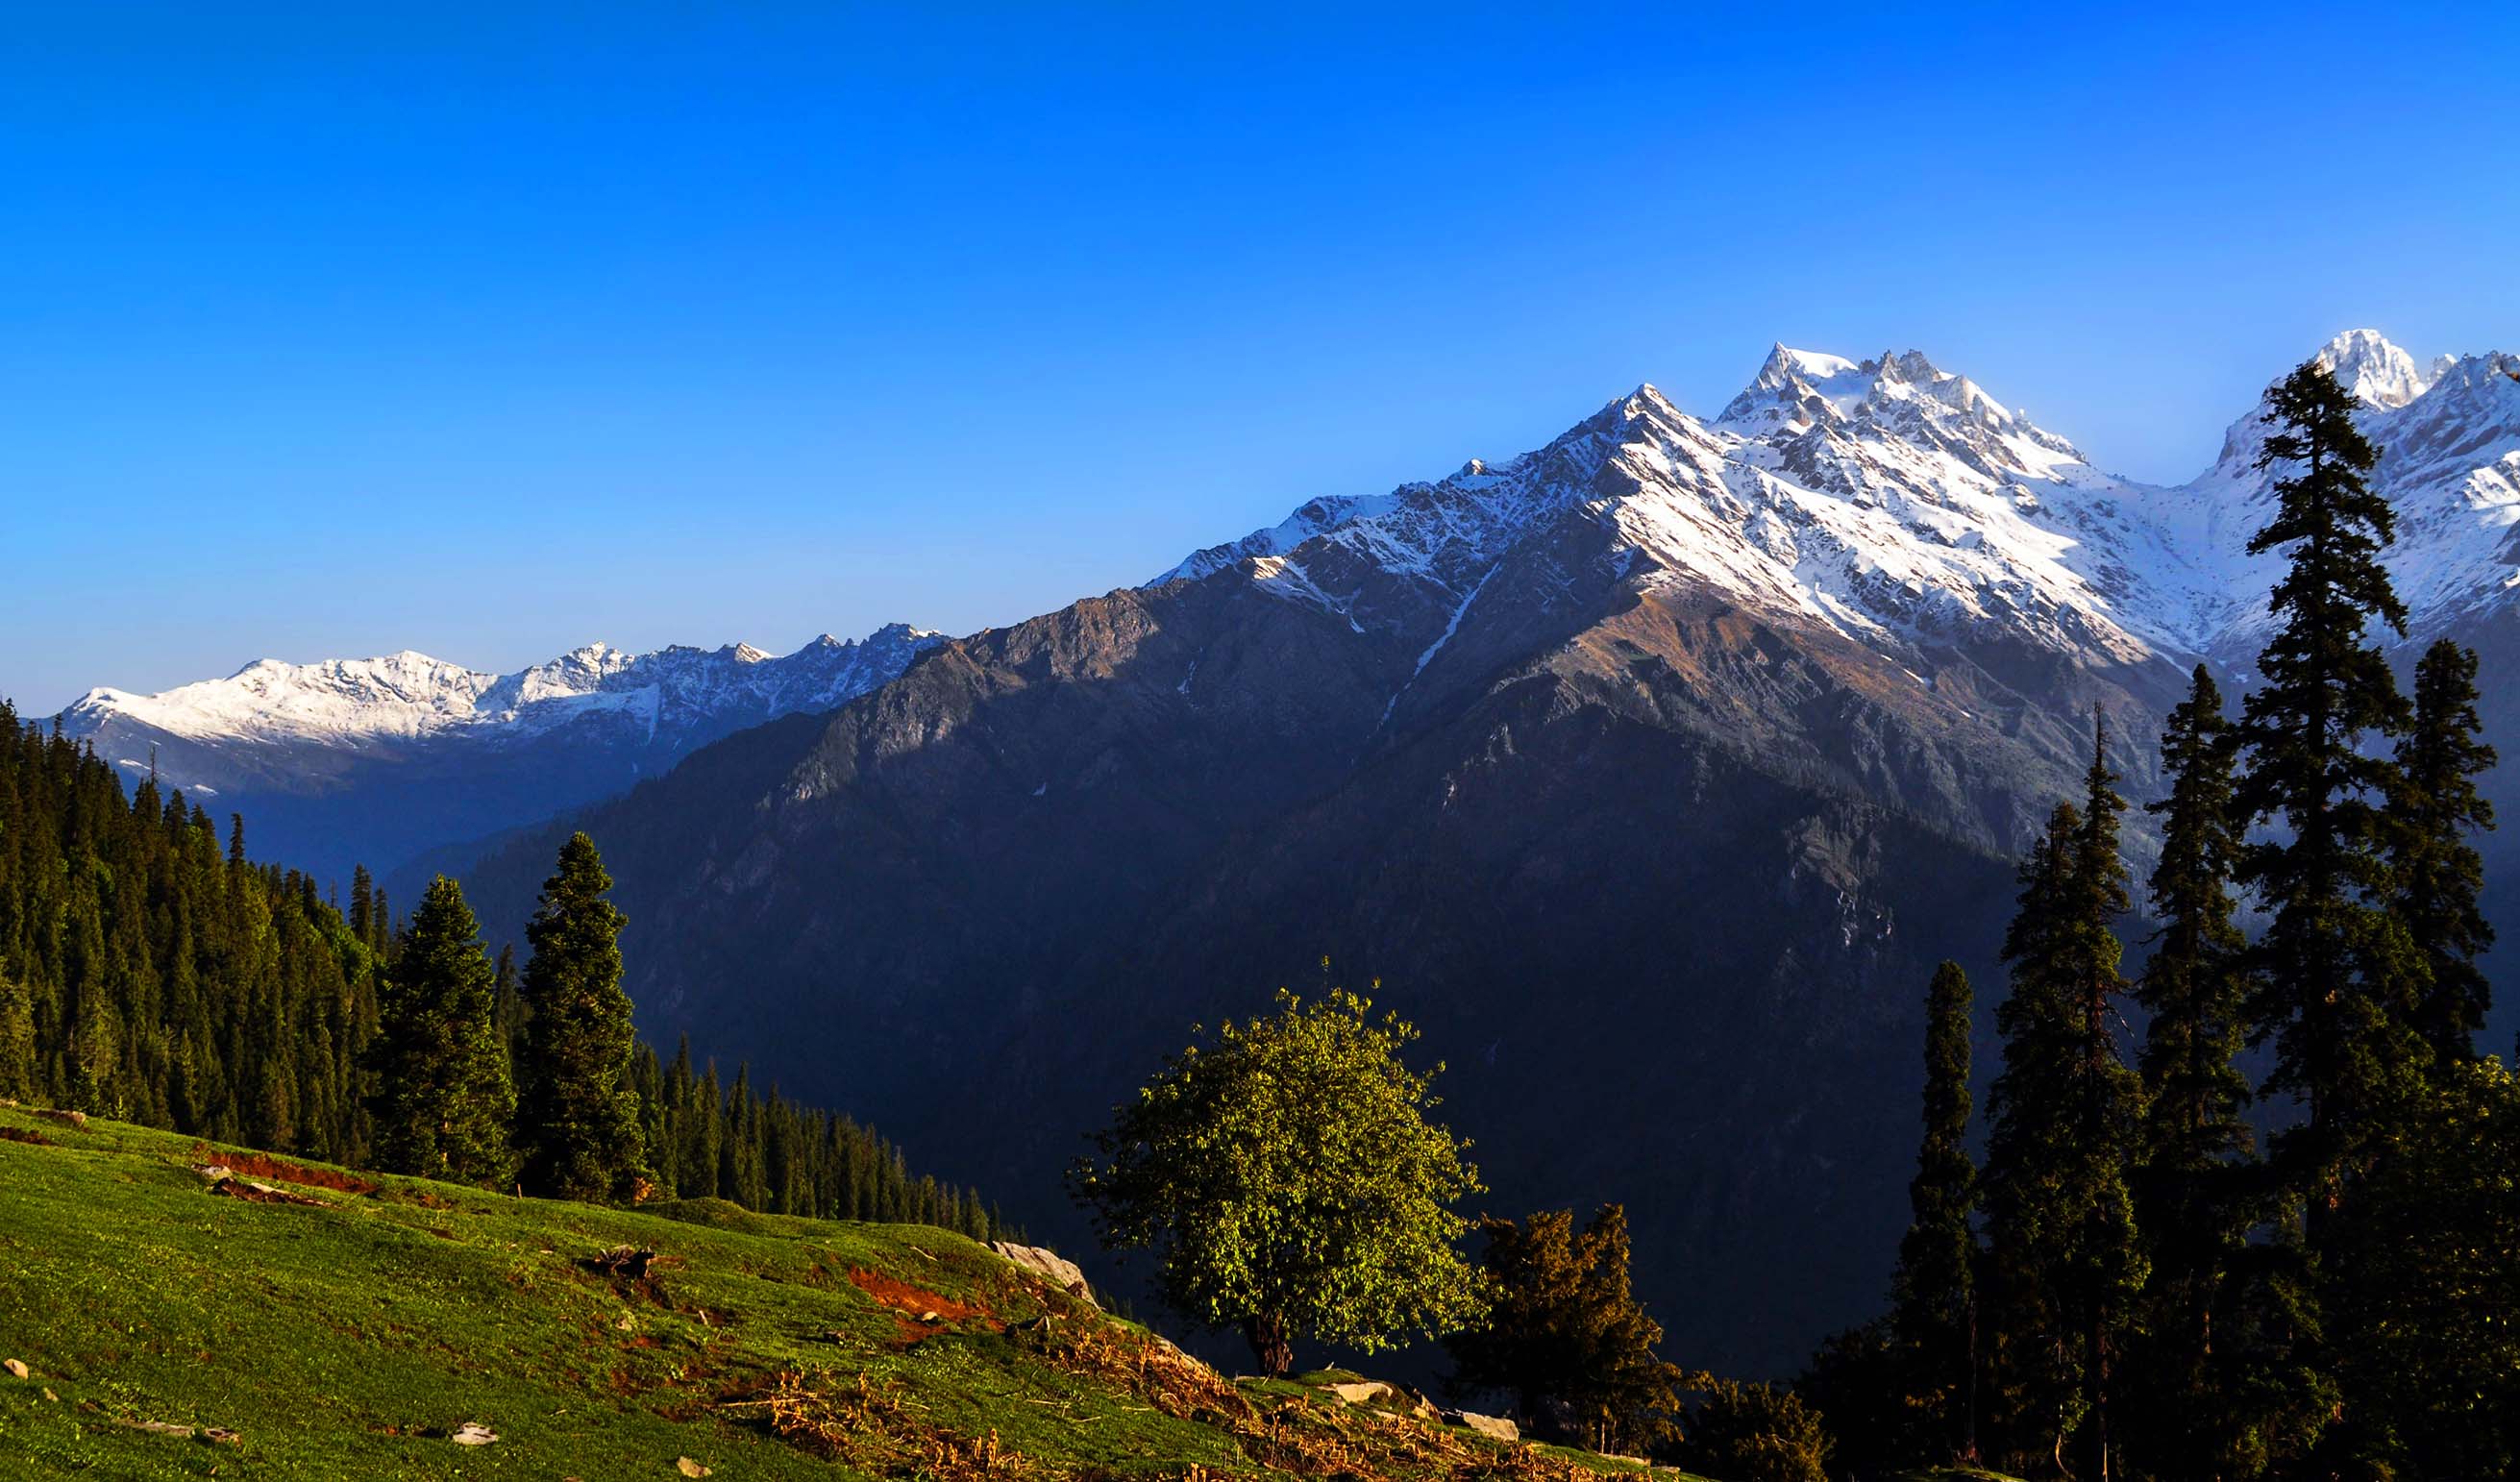 Manali Kasol Kheerganga Trek via Parvati Valley